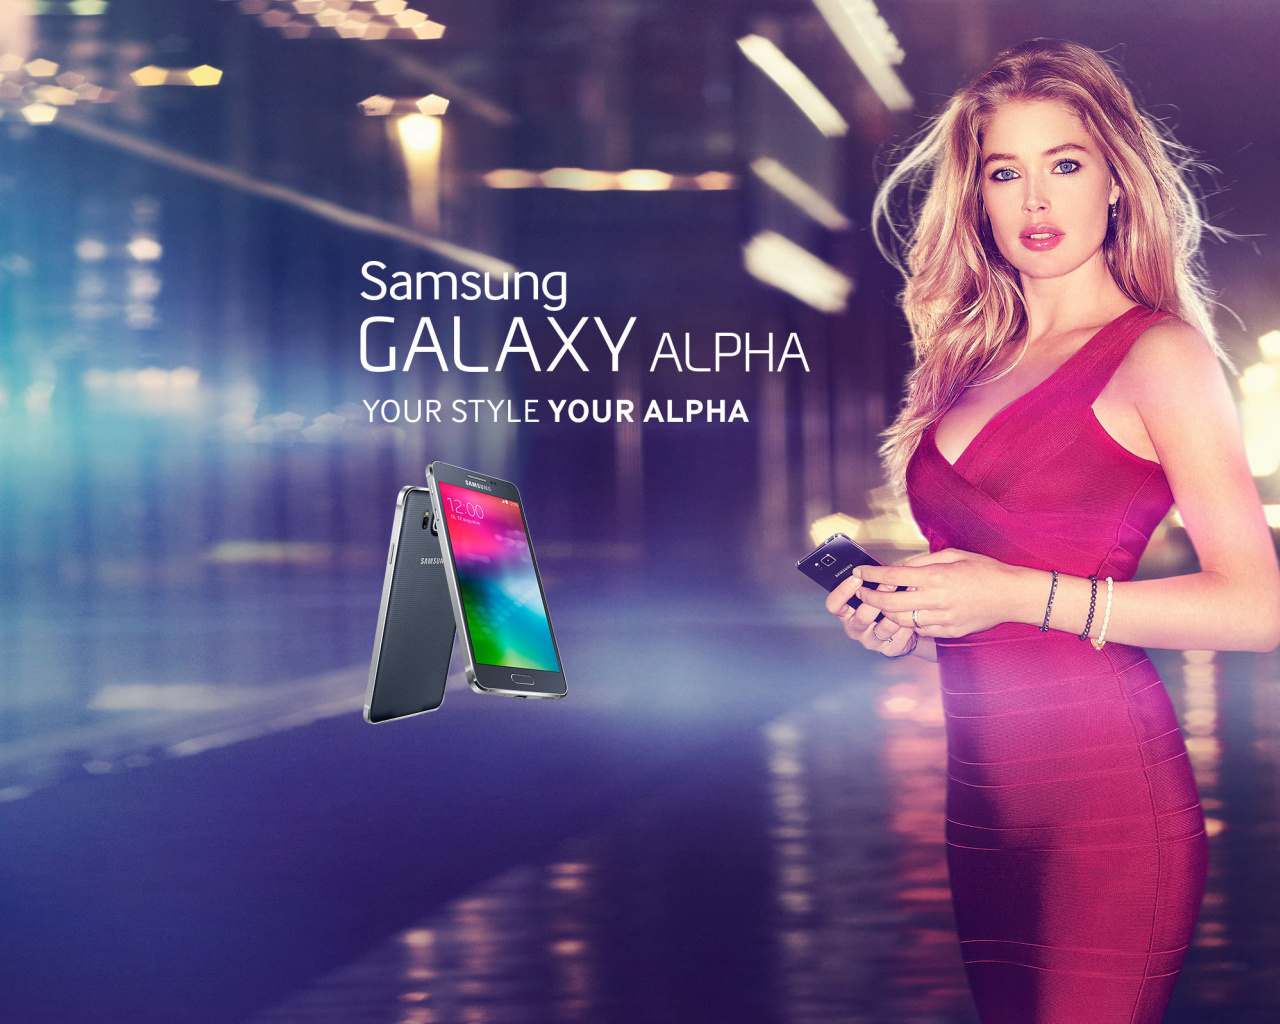 Samsung Galaxy Alpha Advertisement with Doutzen Kroes wallpaper 1280x1024